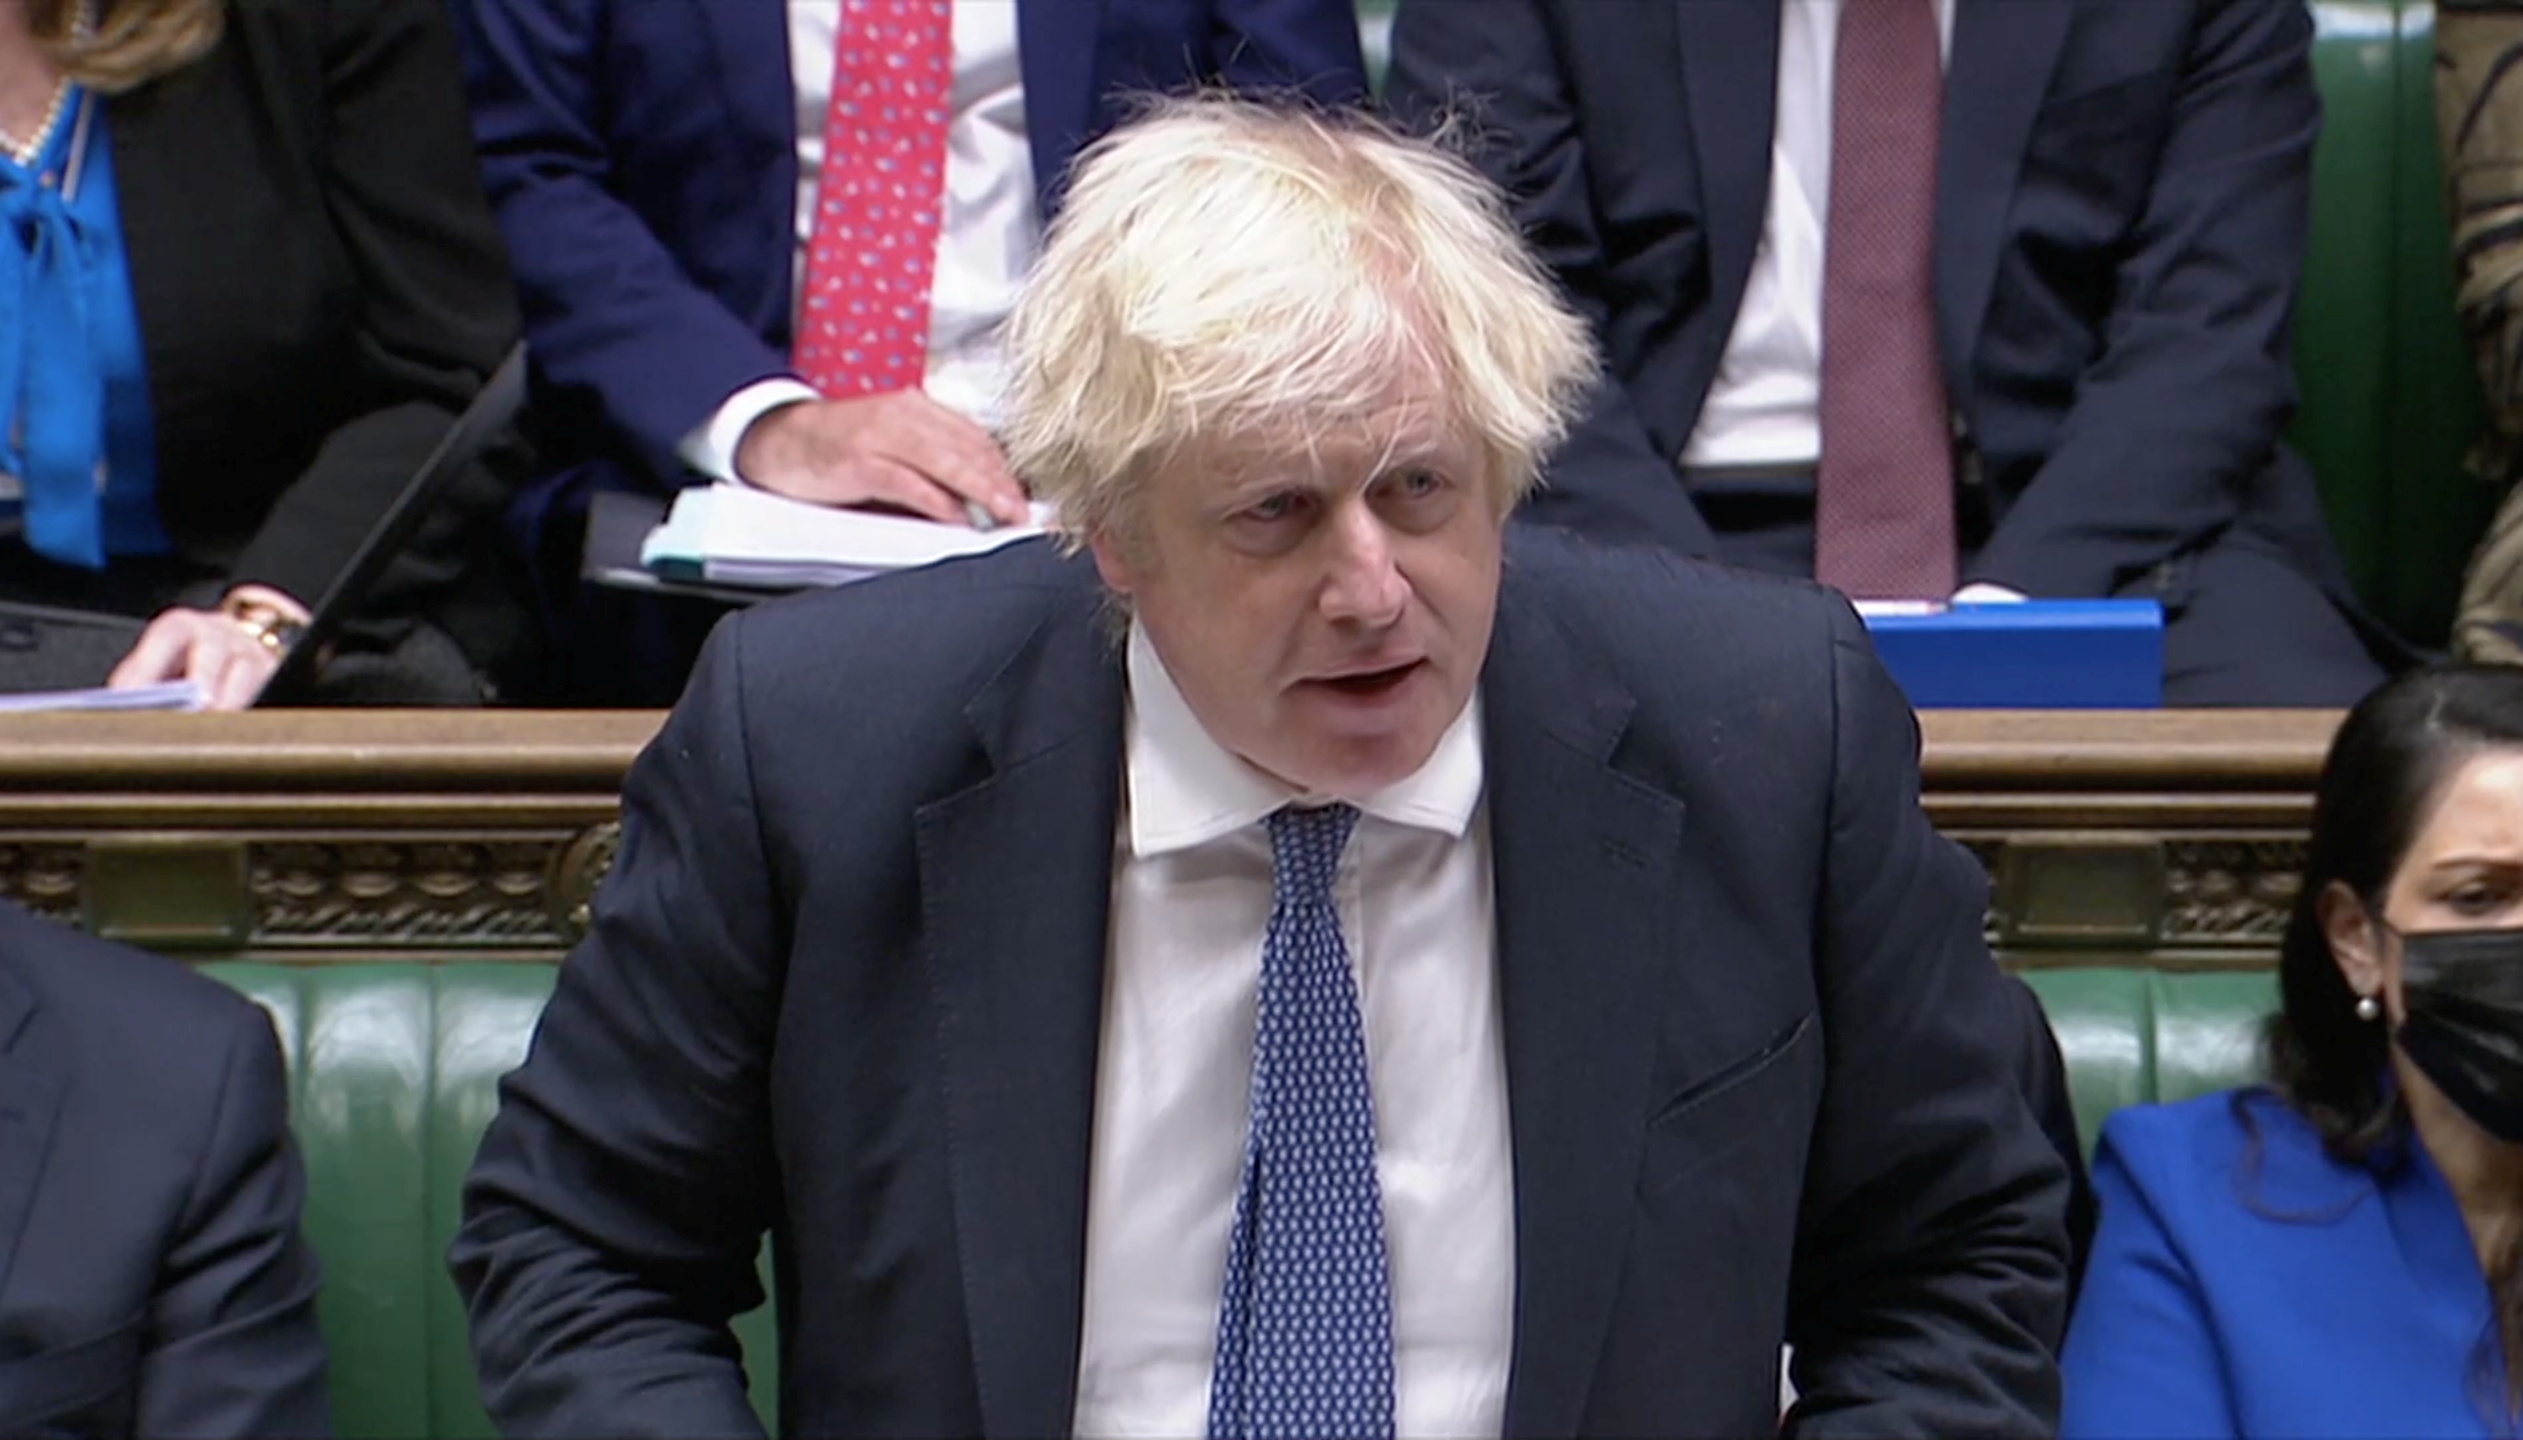 El primer ministro británico durante una sesión en el Parlamento este miércoles (Reuters TV via REUTERS)